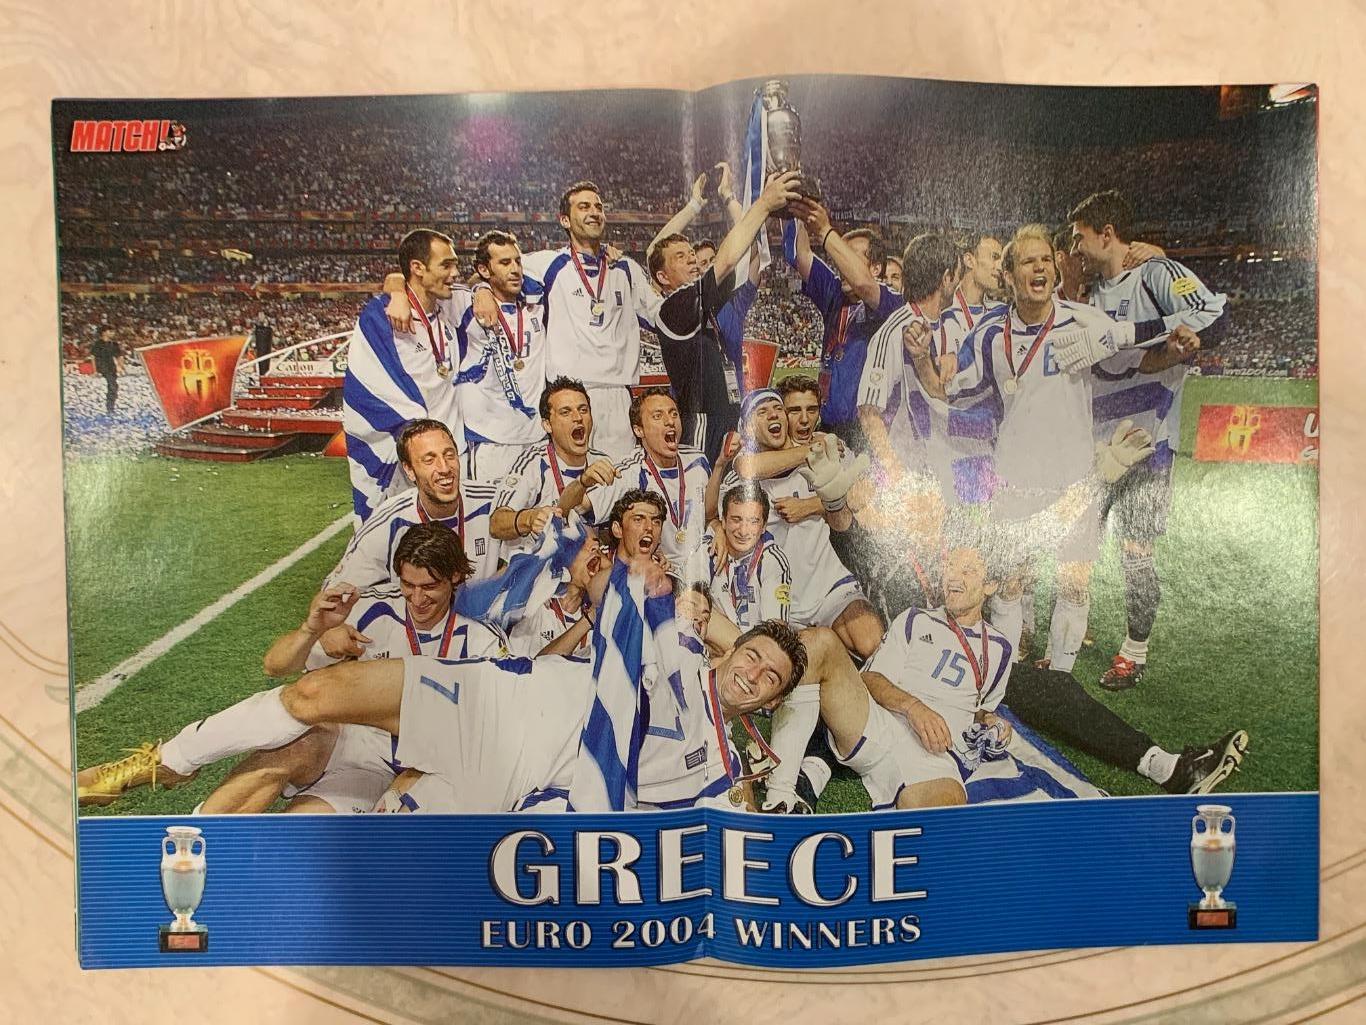 Match победительчемпионата Европы 2004 Греция 1